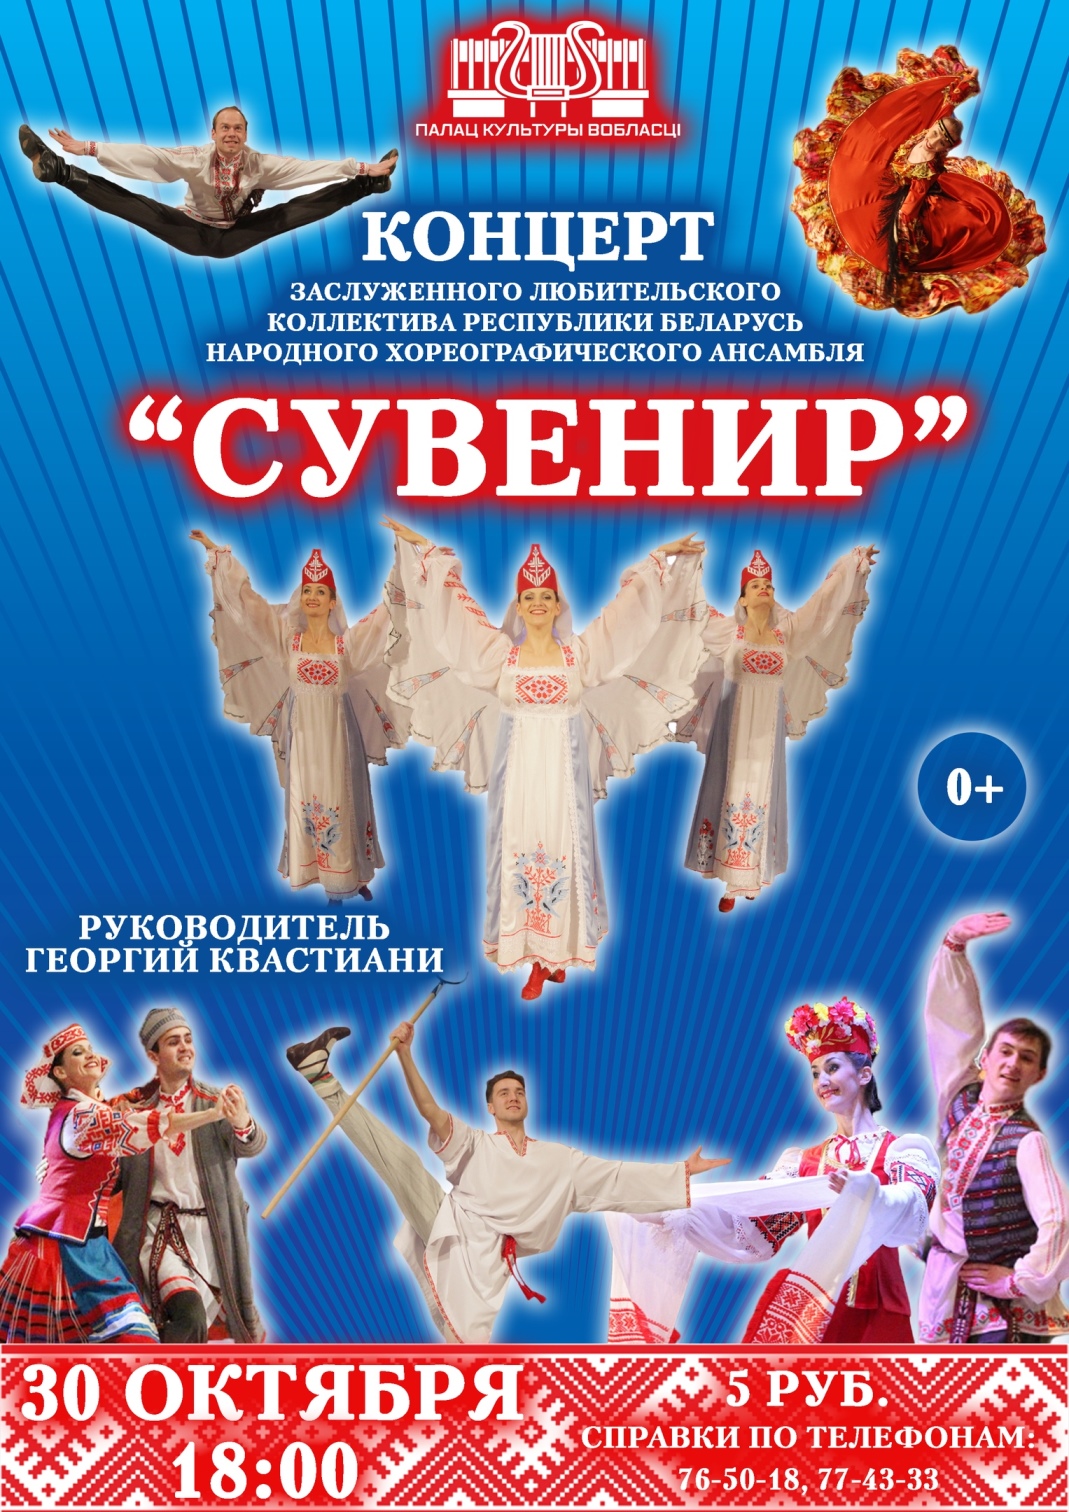 Хореографический ансамбль «Сувенир» выступит в Могилеве 30 октября